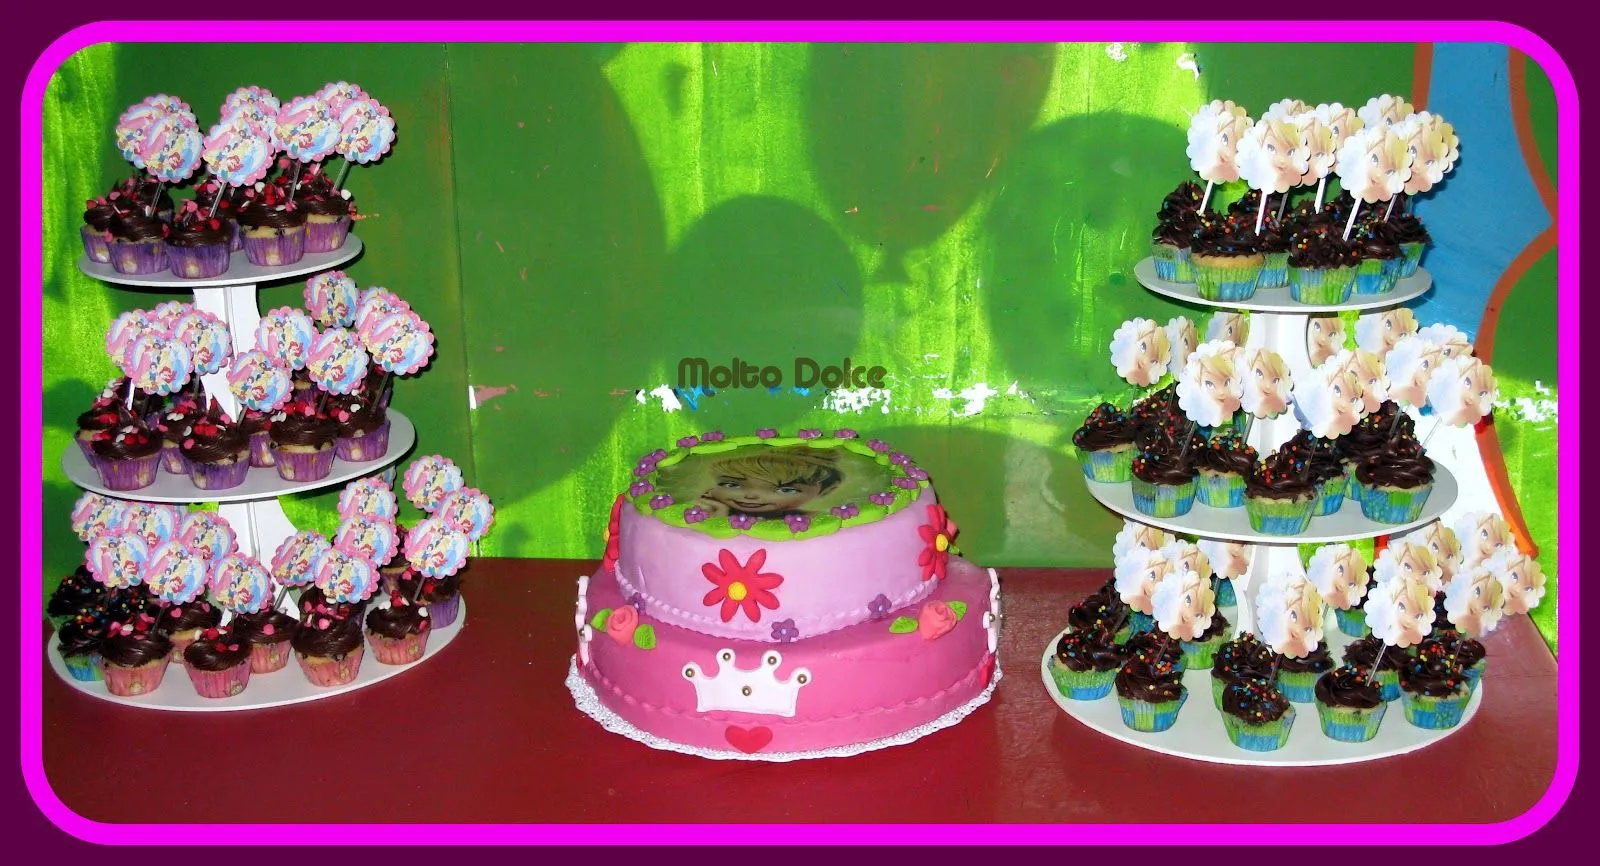 molto dolce: Torta decorada y minicupcakes Tinkerbell y princesas